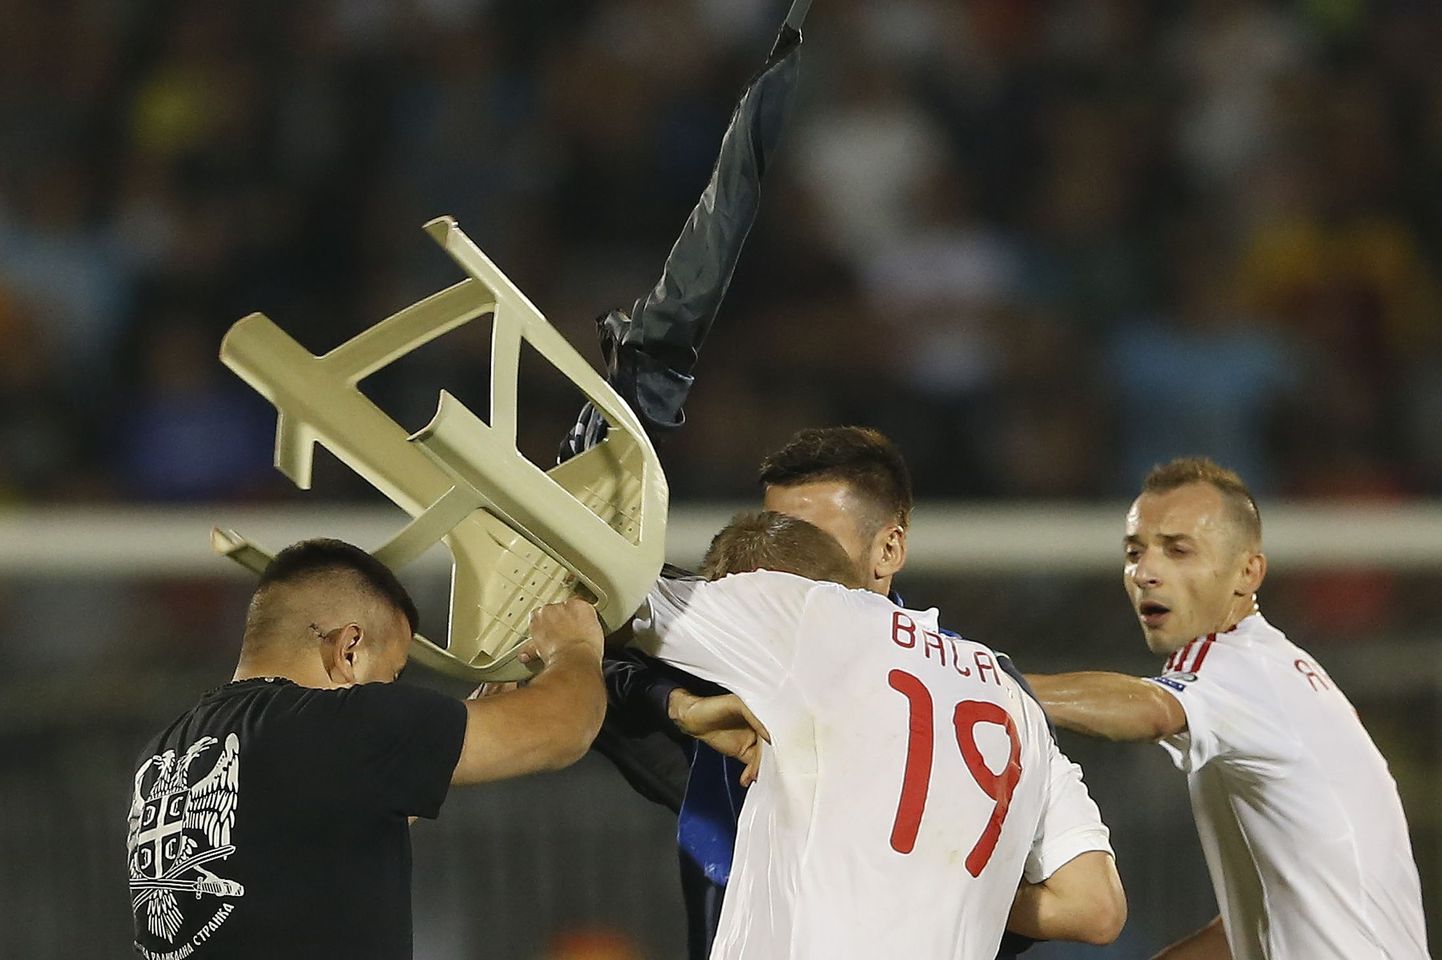 Сербский болельщик, выбежавший на поле, бьет табуреткой албанского футболиста.